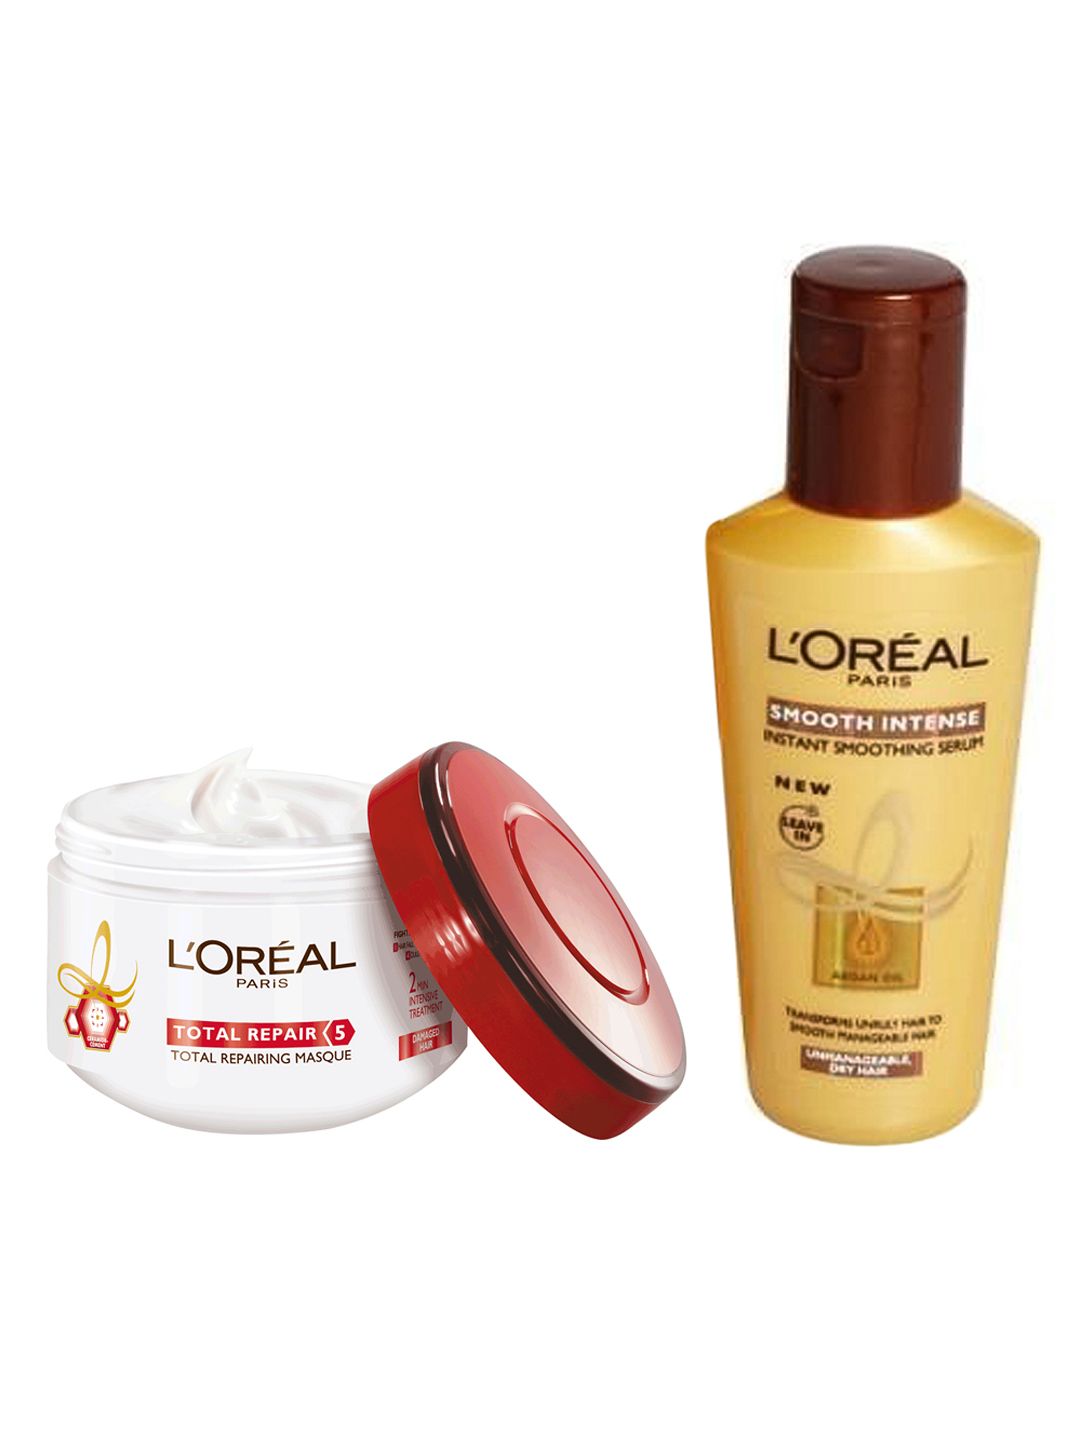 LOreal Paris Total Repair 5 Hair Masque & Smooth Intense Smoothing Serum 100 ml Price in India